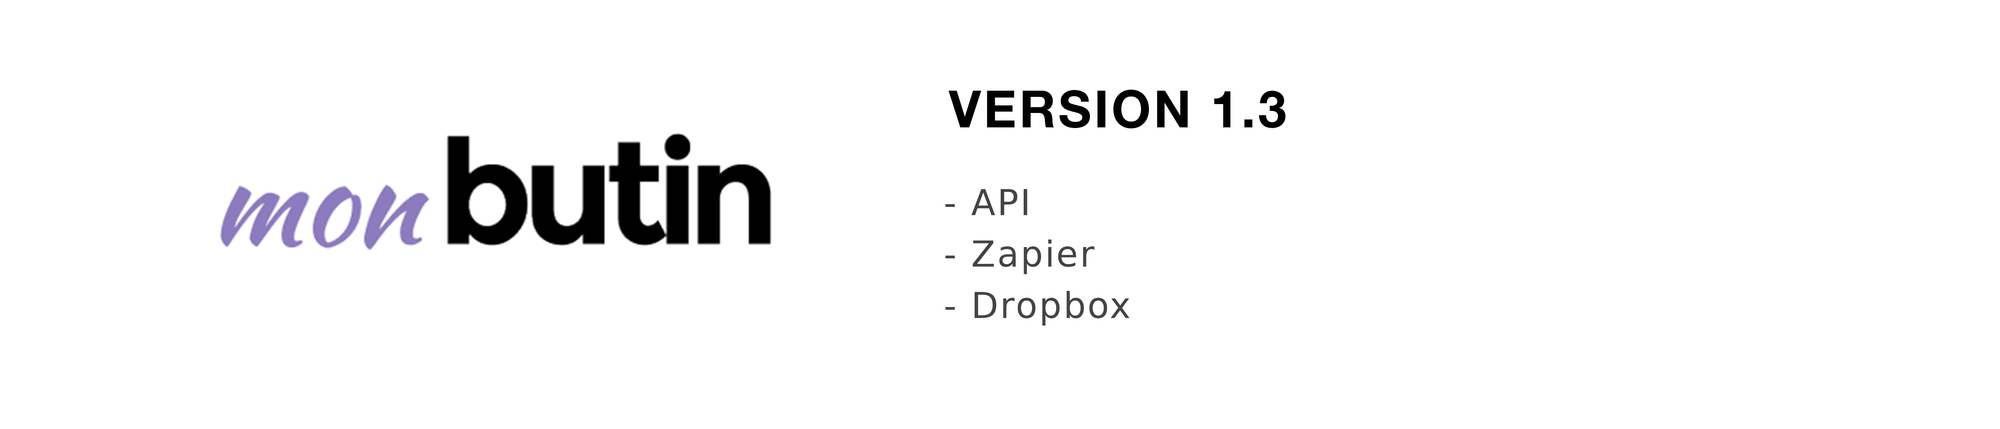 API, Zapier et Dropbox sur la 1.3